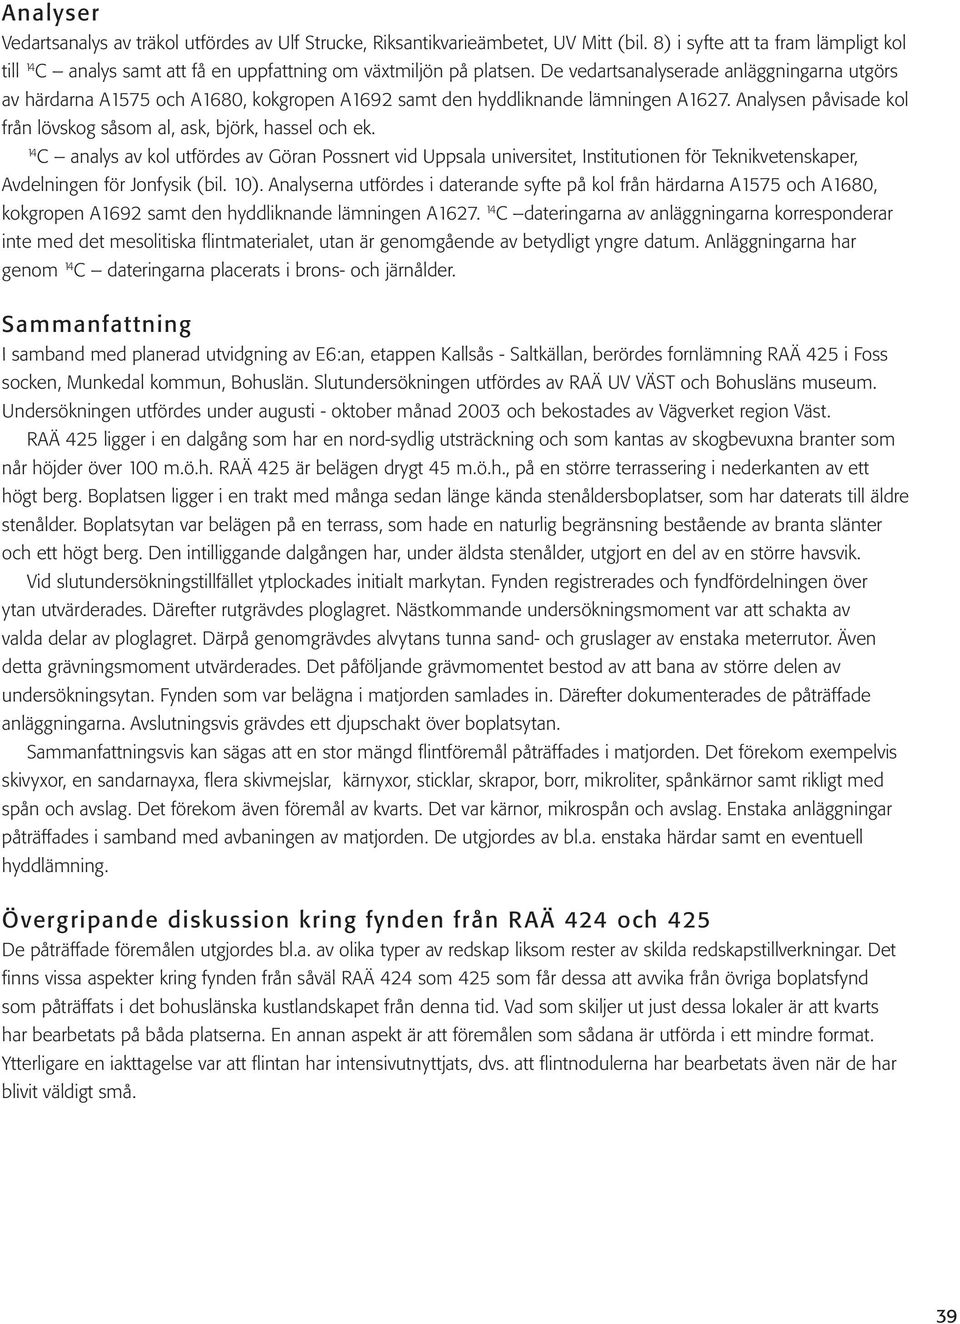 14 C analys av kol utfördes av Göran Possnert vid Uppsala universitet, Institutionen för Teknikvetenskaper, Avdelningen för Jonfysik (bil. 10).